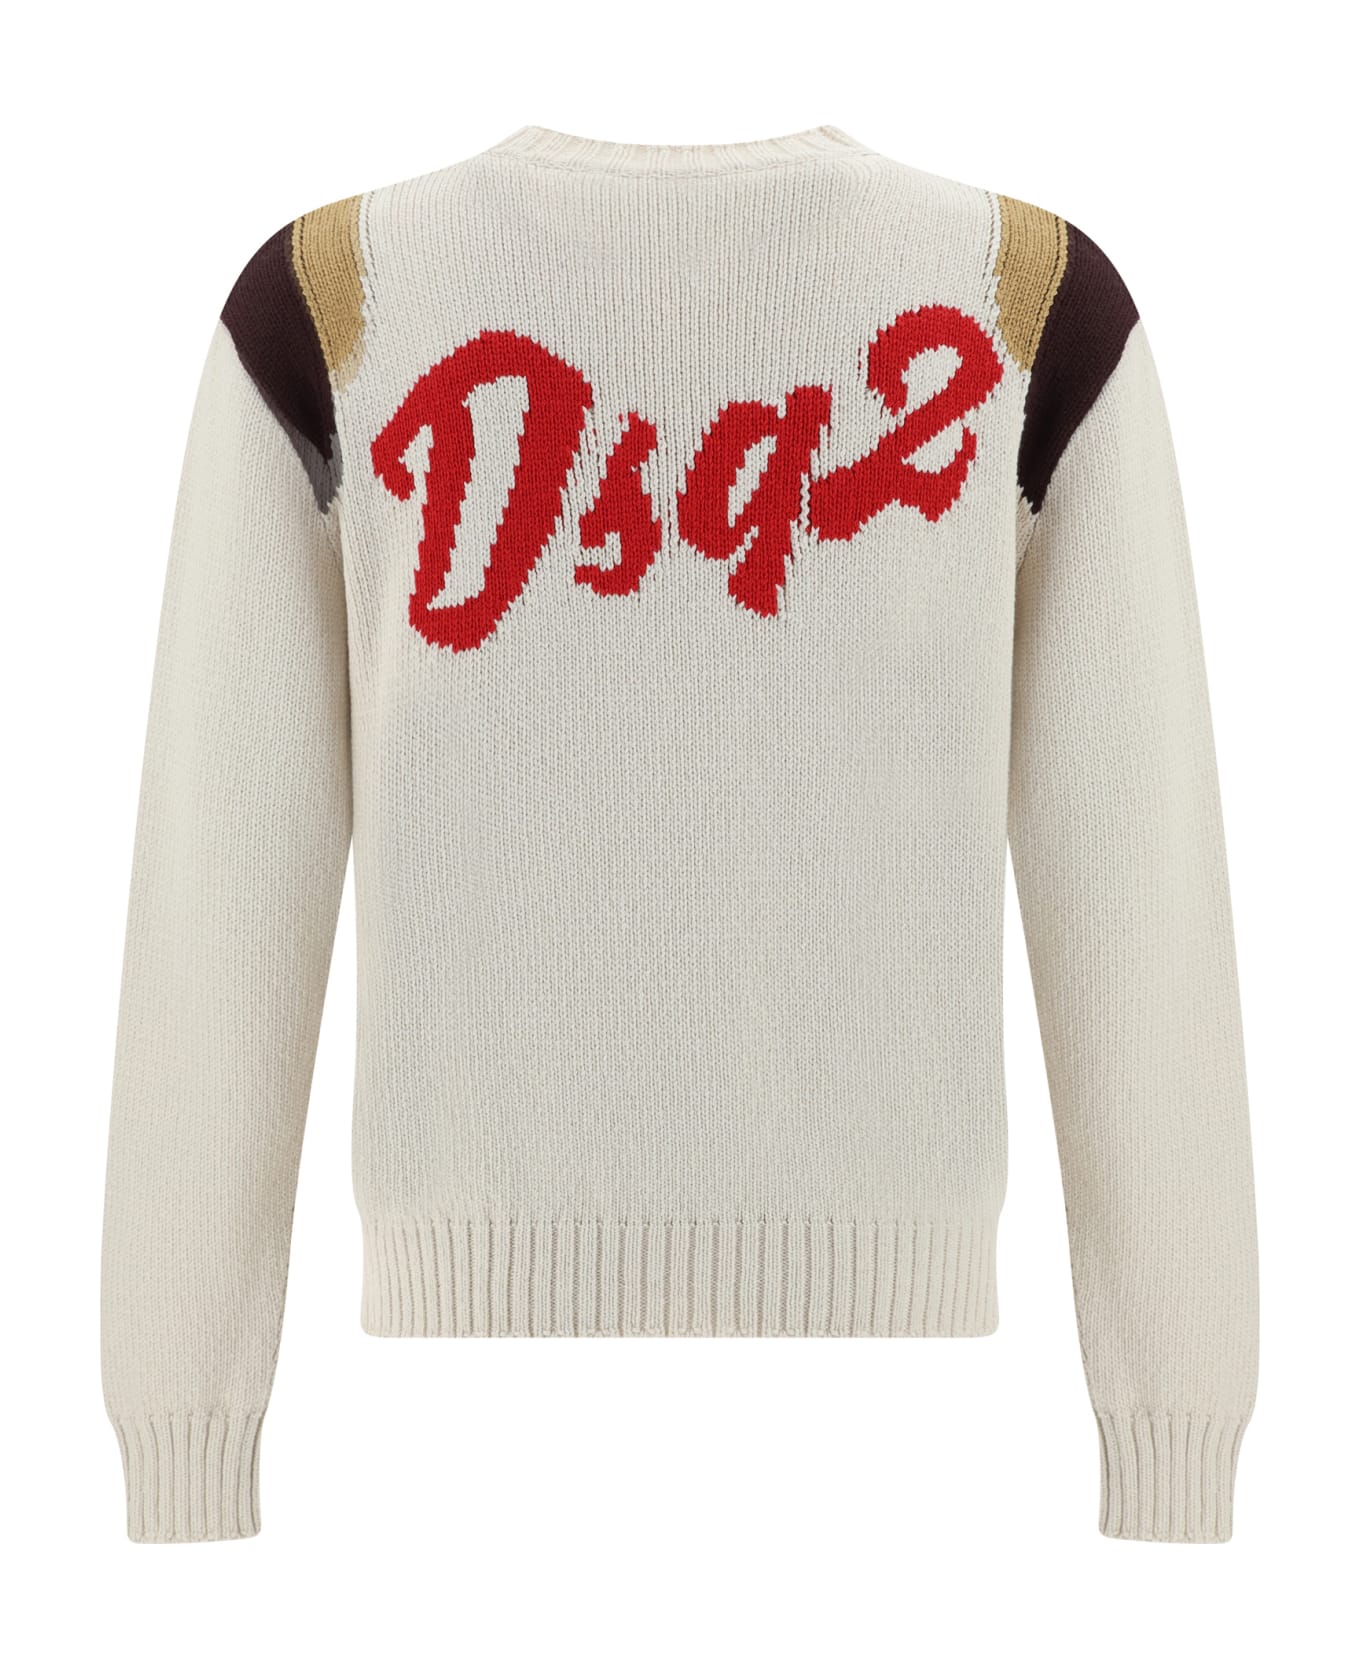 Dsquared2 Jacquard Sweater - Multicolor